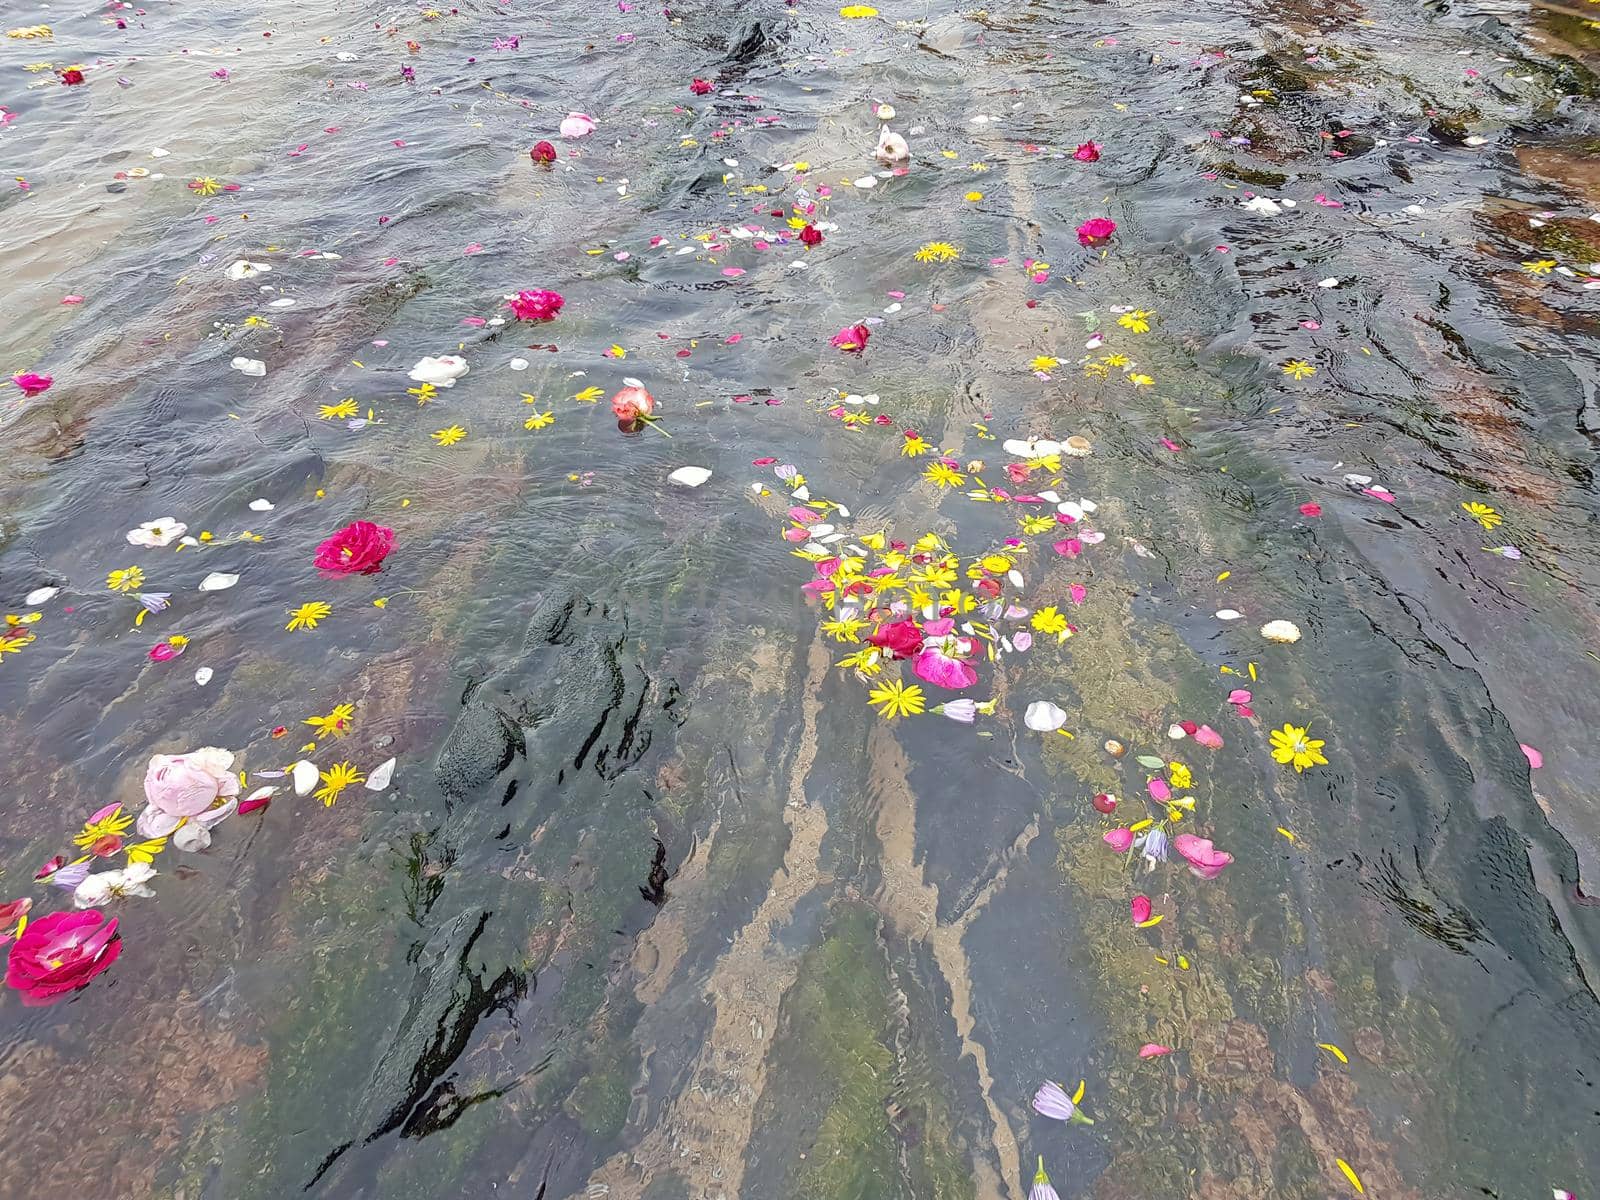 Flowers floating in the atlantic ocean by devy